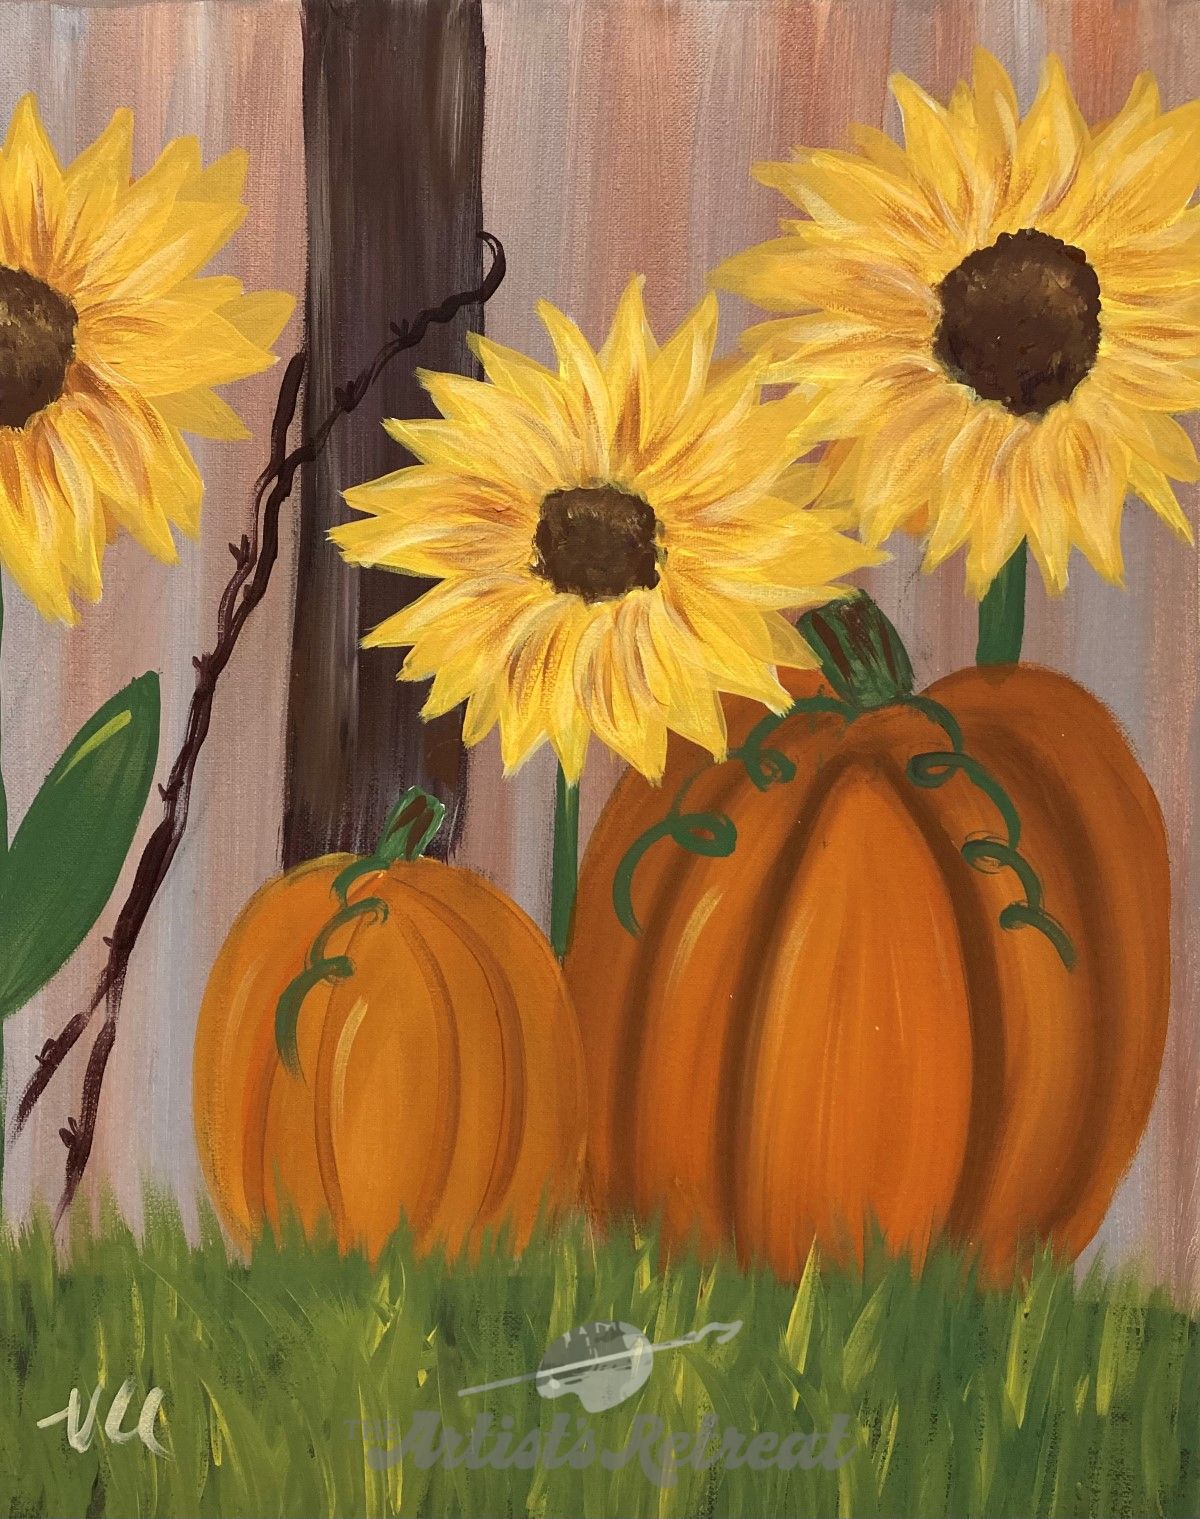 Sunflowers & Pumpkins - The Artist's Retreat